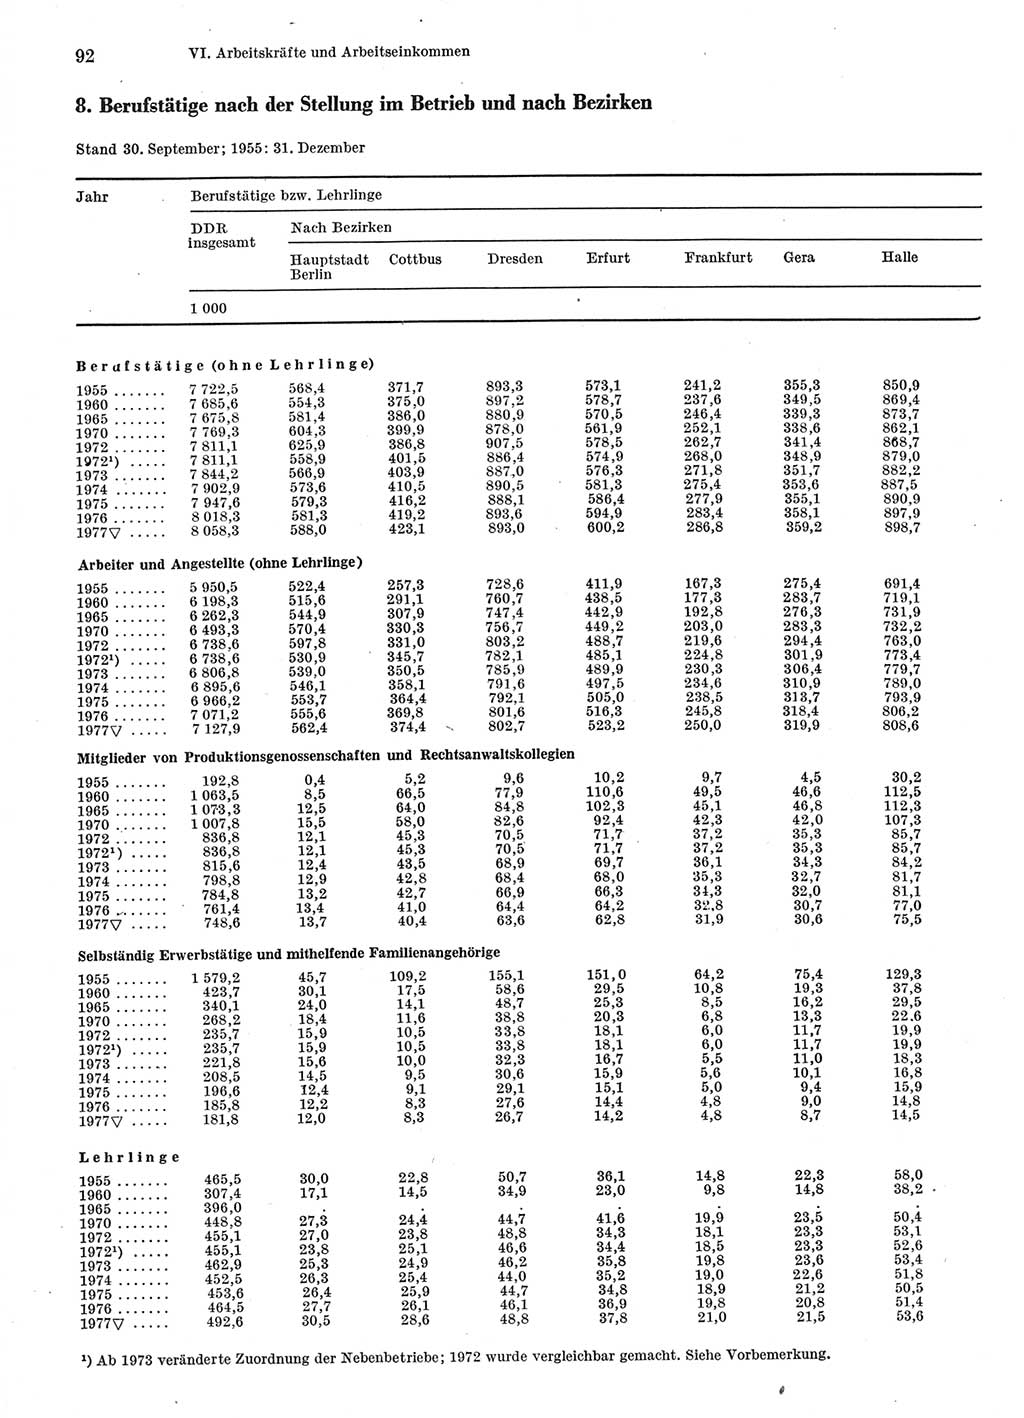 Statistisches Jahrbuch der Deutschen Demokratischen Republik (DDR) 1978, Seite 92 (Stat. Jb. DDR 1978, S. 92)